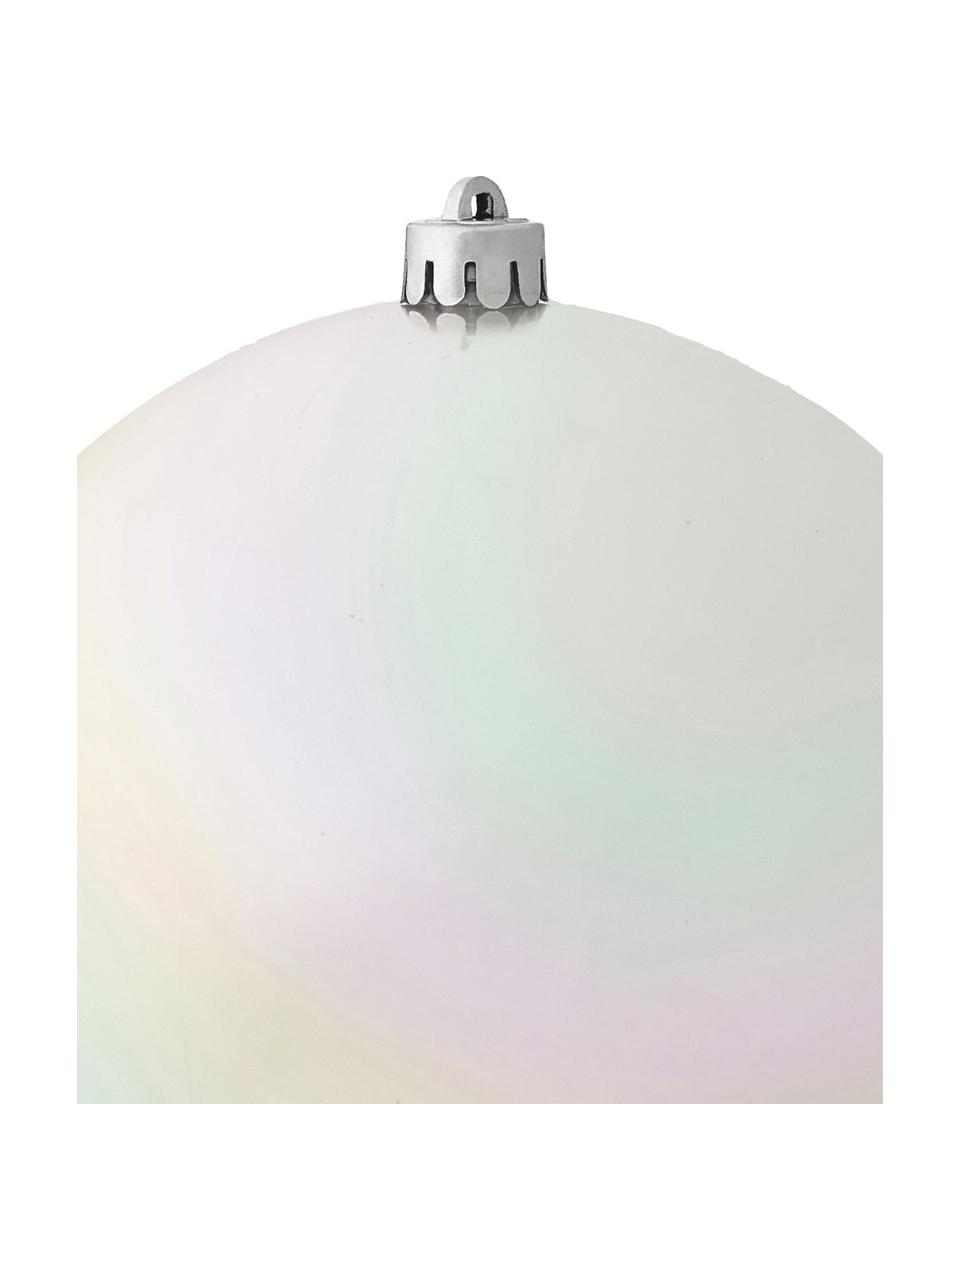 Bola de Navidad irrompibles Stix, Plástico irrompible, Blanco, multicolor, Ø 14 cm, 2 uds.